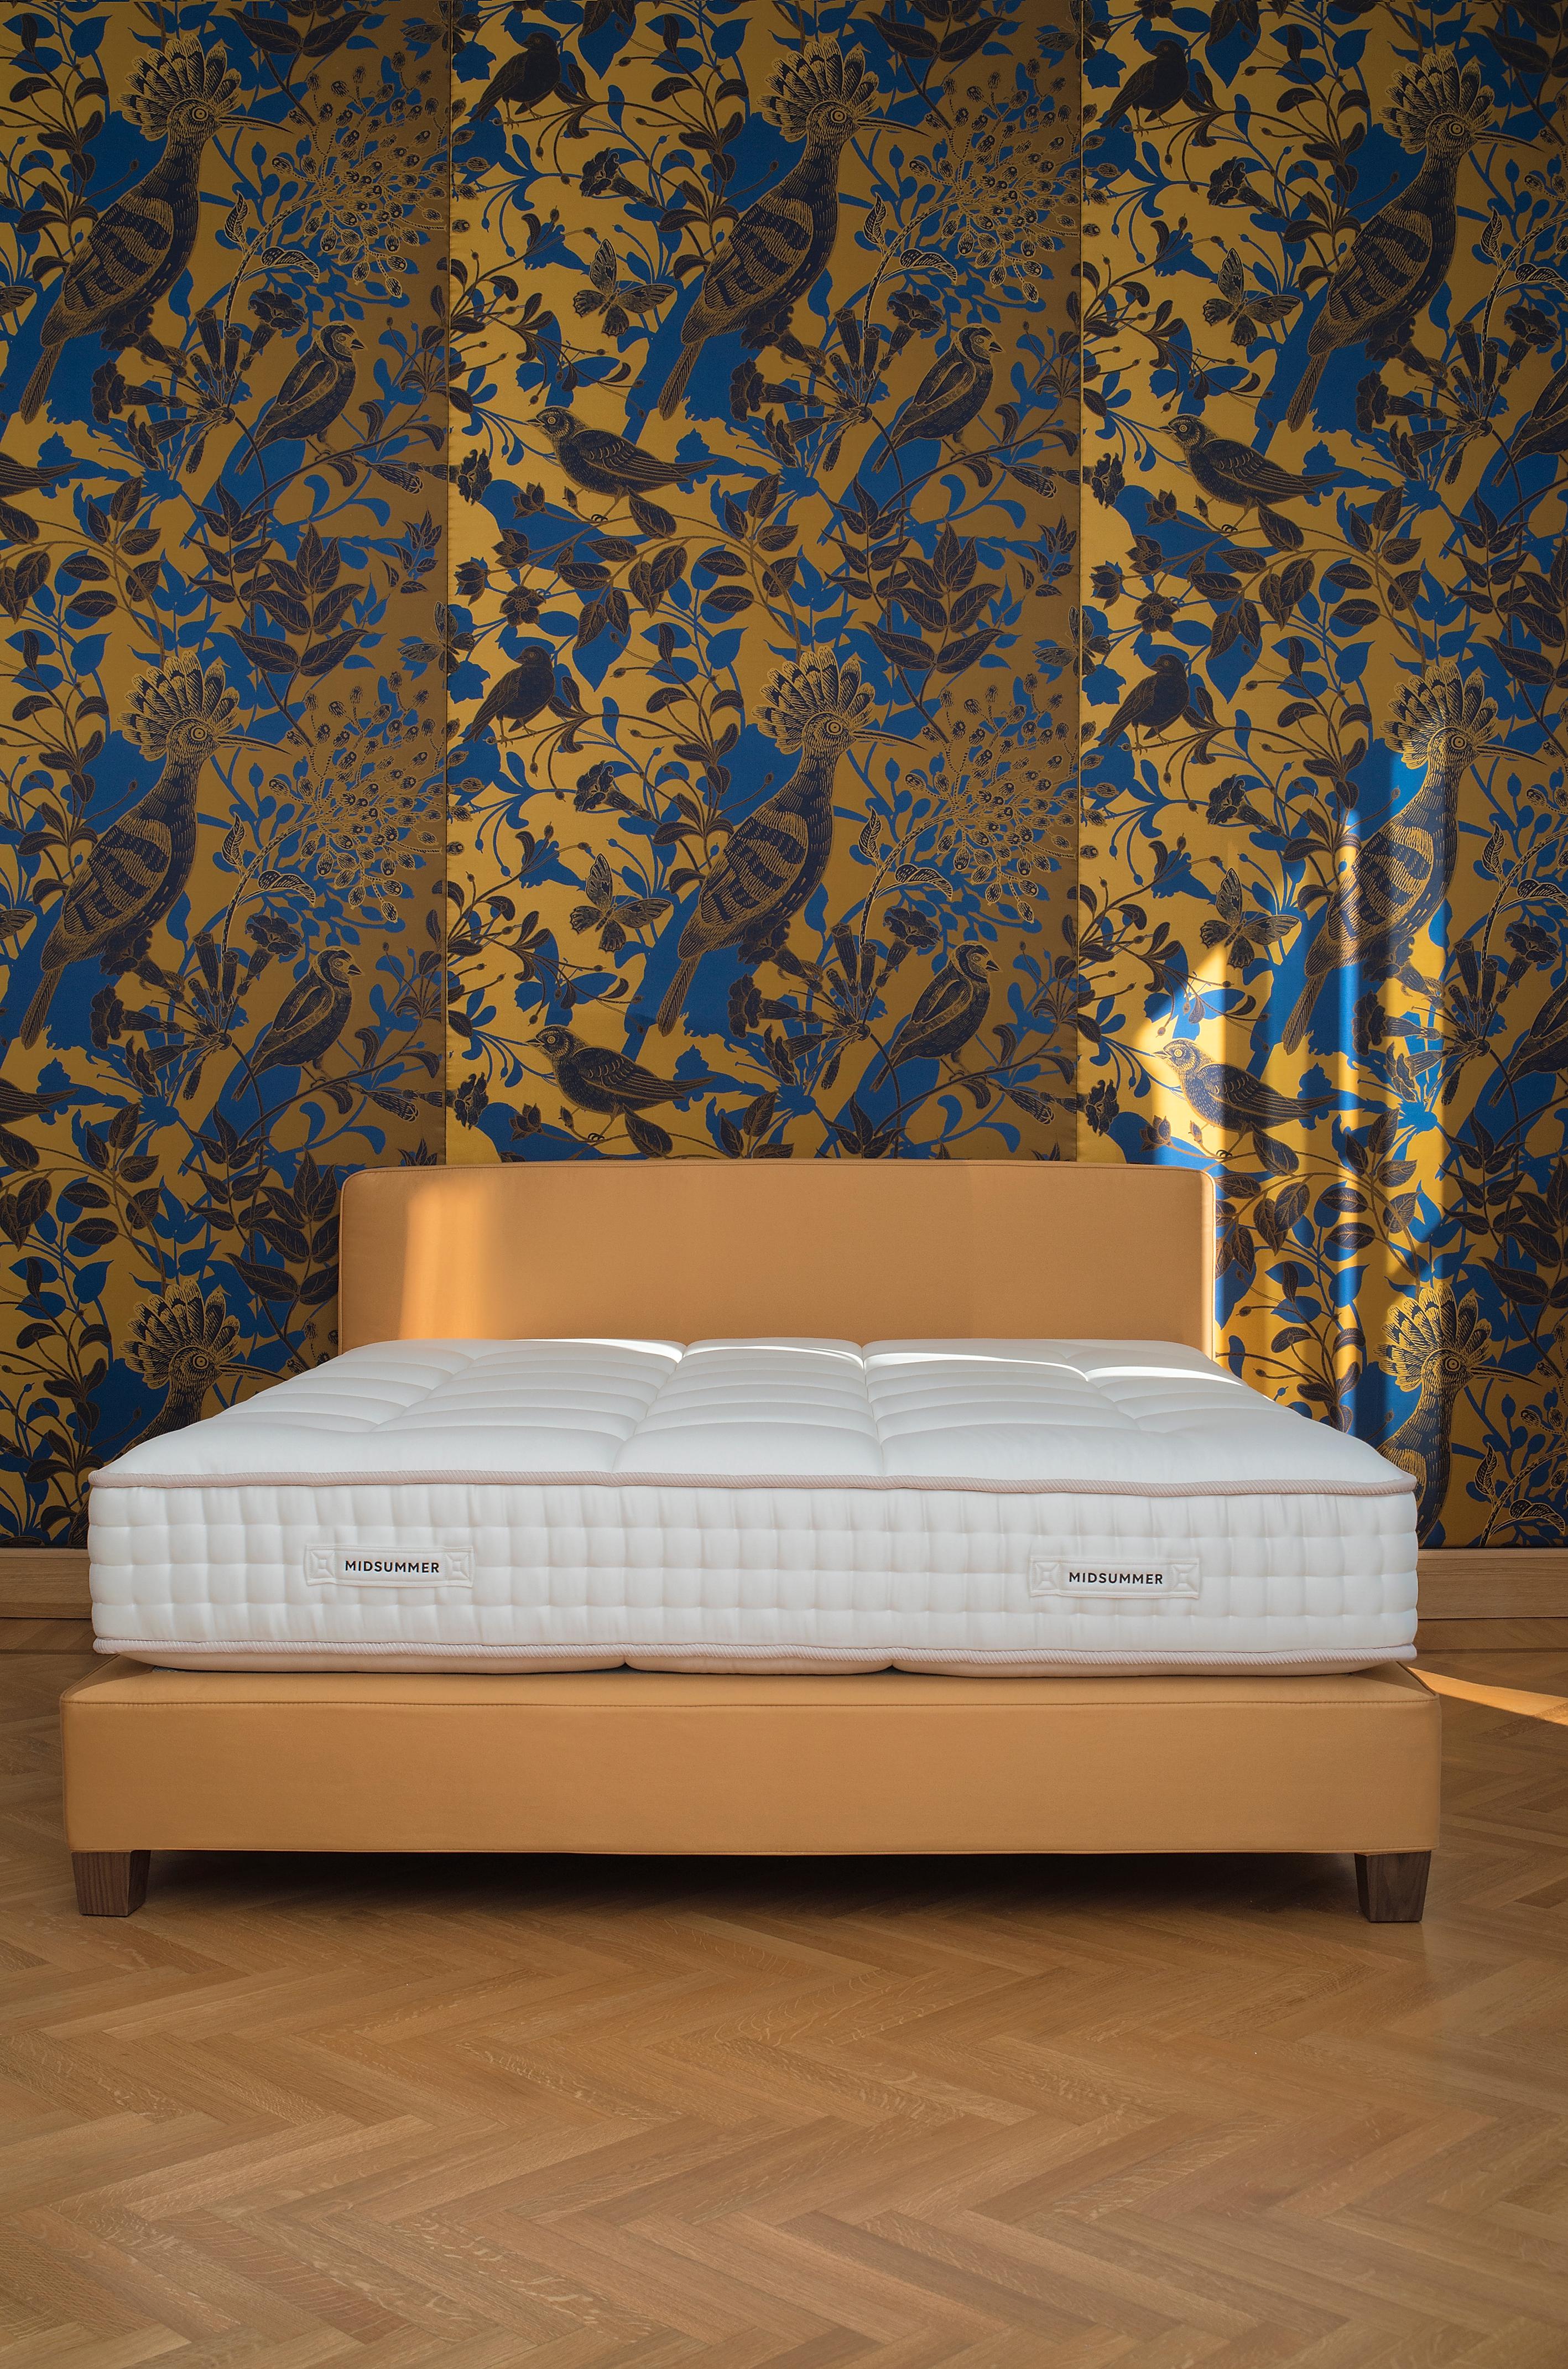 La pureté d'un lit de luxe simple mais précieux dans ses finitions et ses matériaux, polyvalent et adapté à tous les environnements. Simplicité et sophistication, qui englobe à la fois le travail et la recherche. Simple et beau, il cache derrière